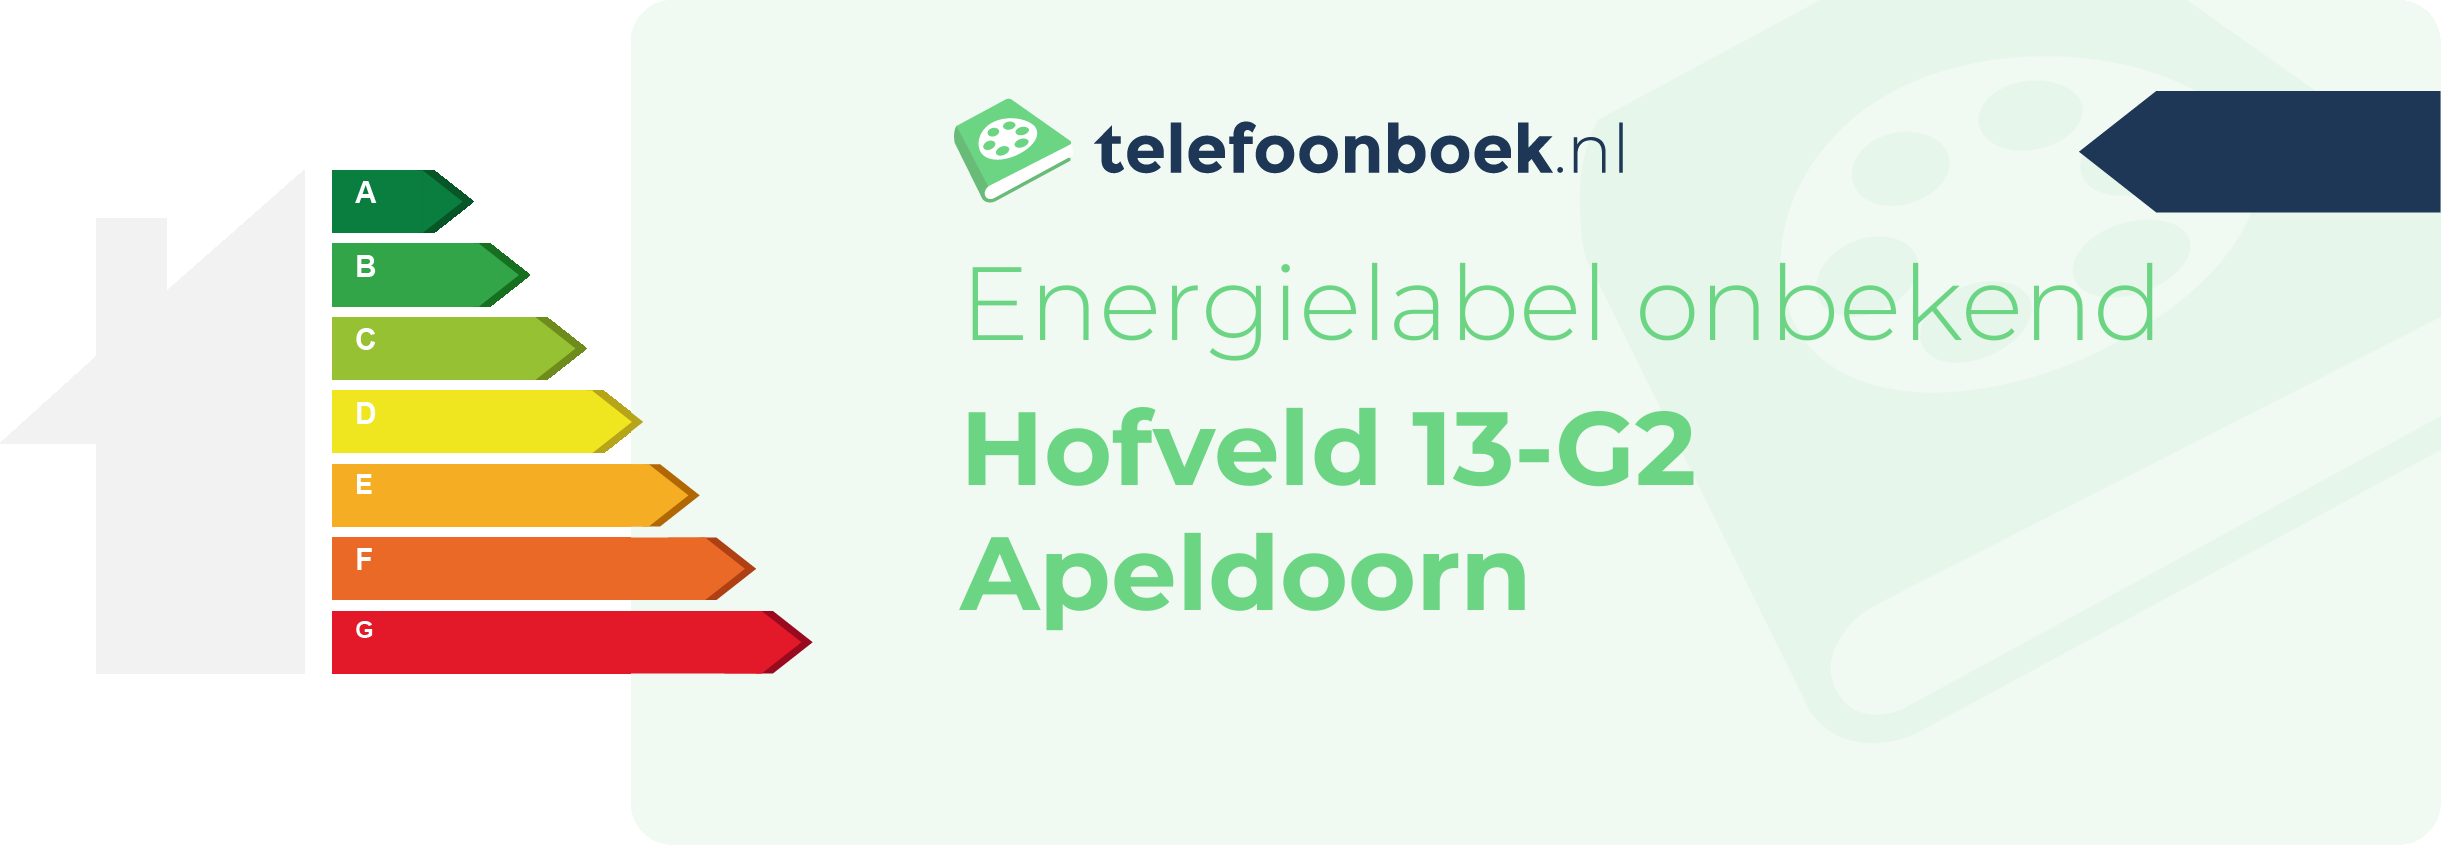 Energielabel Hofveld 13-G2 Apeldoorn